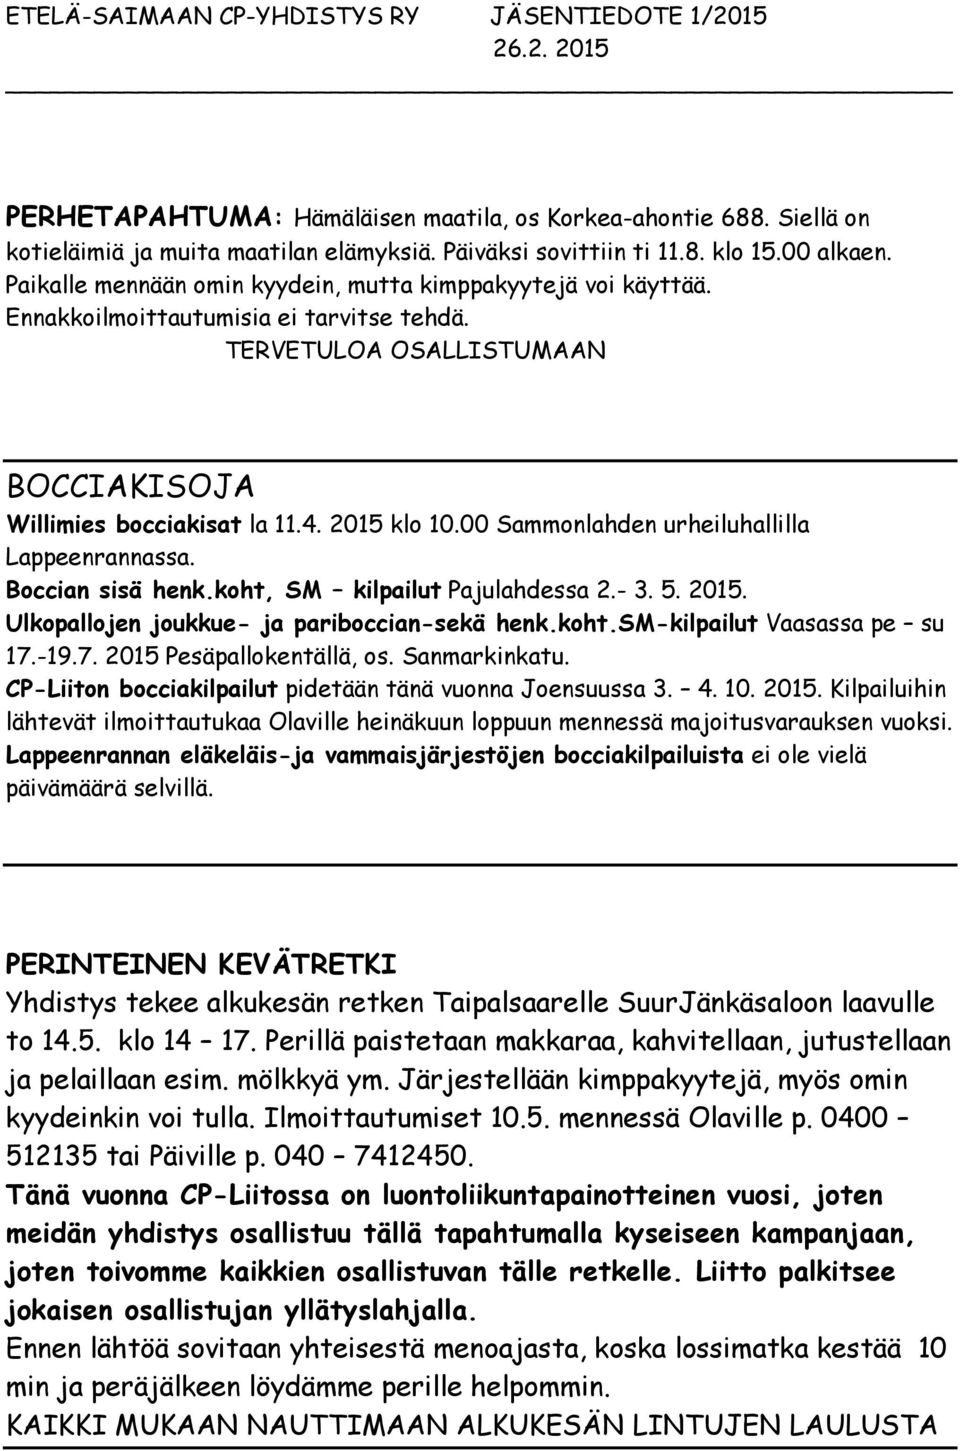 00 Sammonlahden urheiluhallilla Lappeenrannassa. Boccian sisä henk.koht, SM kilpailut Pajulahdessa 2.- 3. 5. 2015. Ulkopallojen joukkue- ja pariboccian-sekä henk.koht.sm-kilpailut Vaasassa pe su 17.